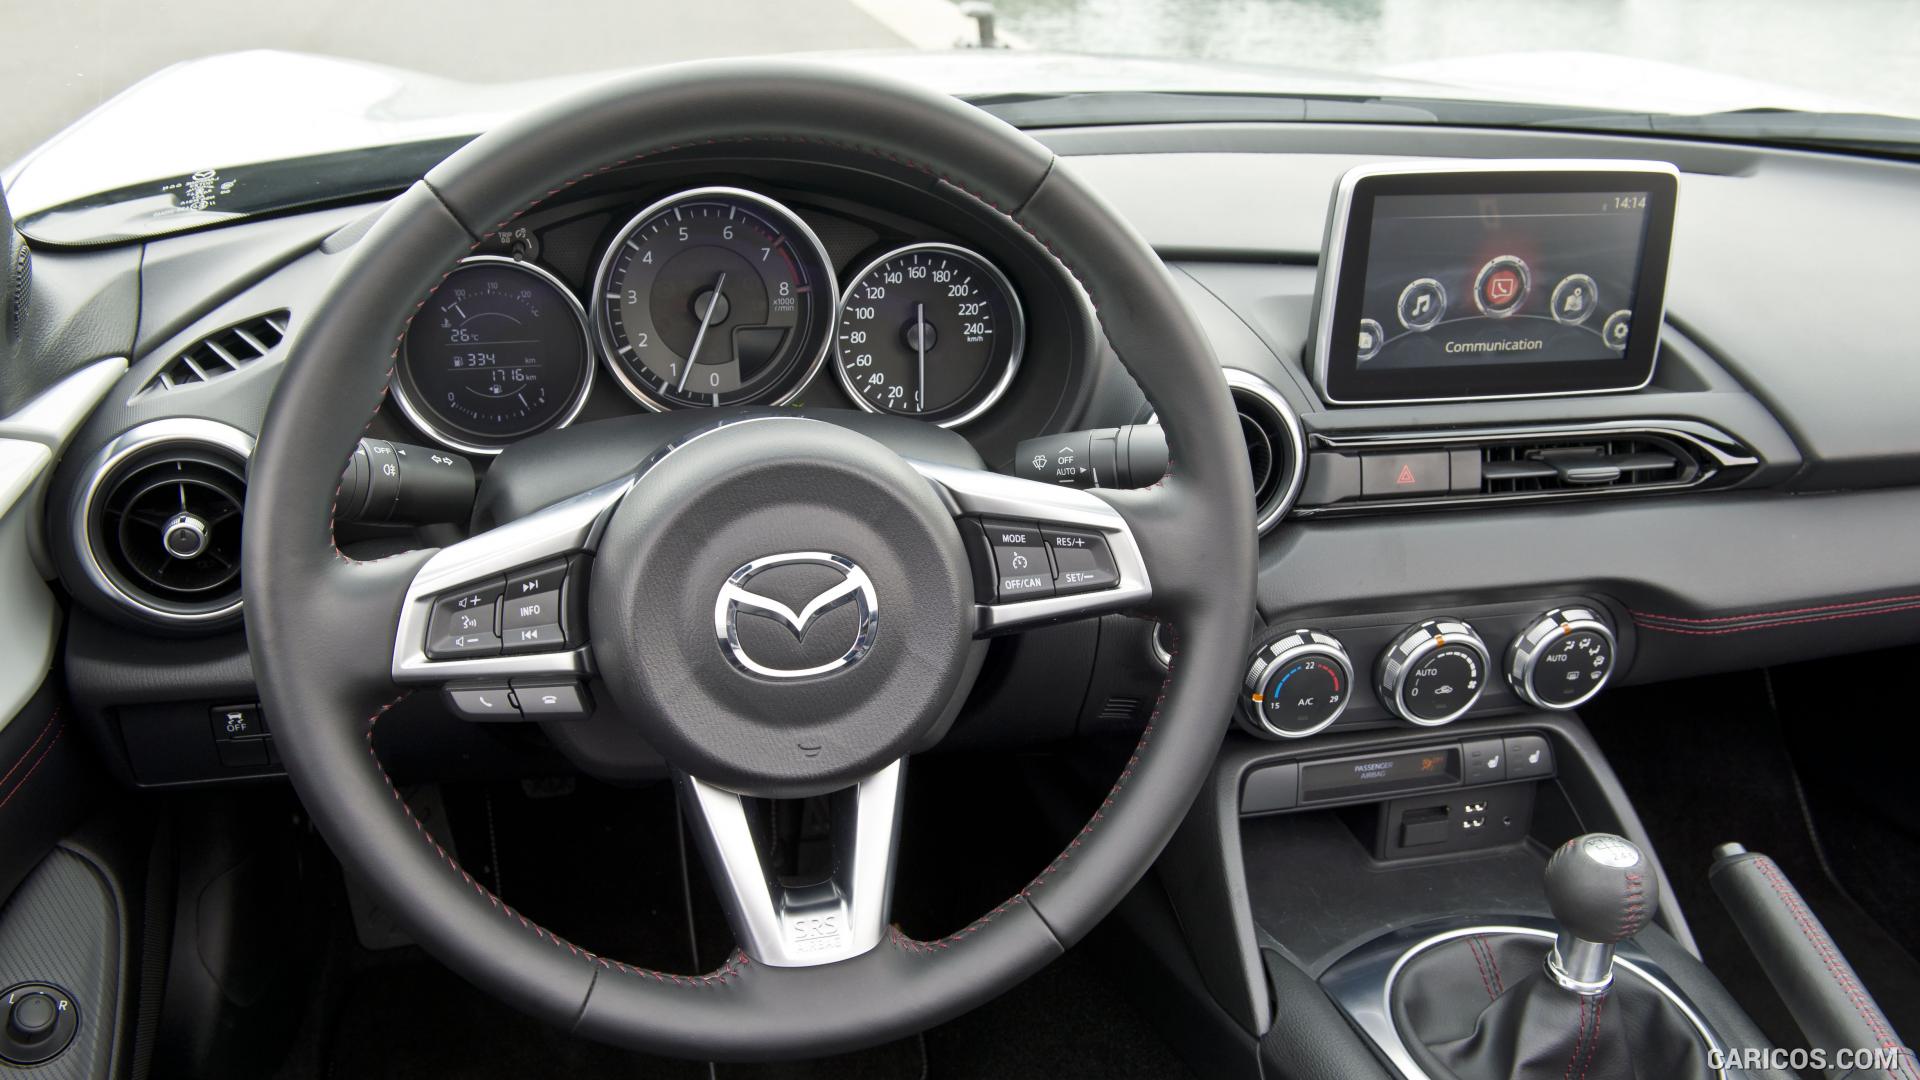 2016 Mazda MX-5 Miata (Euro-Spec)  - Interior Dashboard, #287 of 348